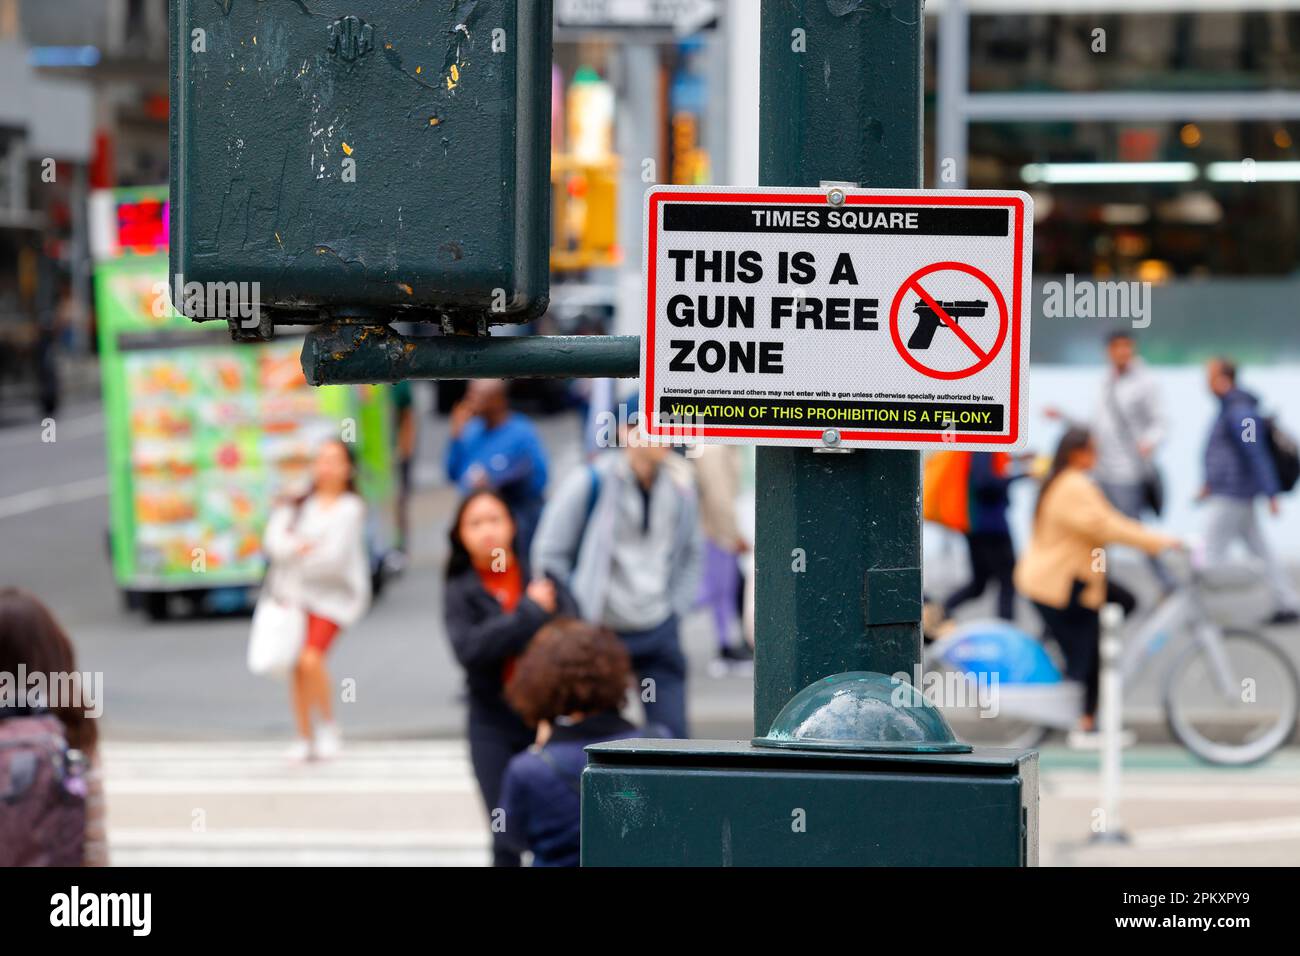 05 avril 2023, New York, Un panneau « Times Square This a Gun Free zone » annonçant Times Square dans Midtown Manhattan une zone exempte d'armes à feu. (voir plus d'informations) Banque D'Images